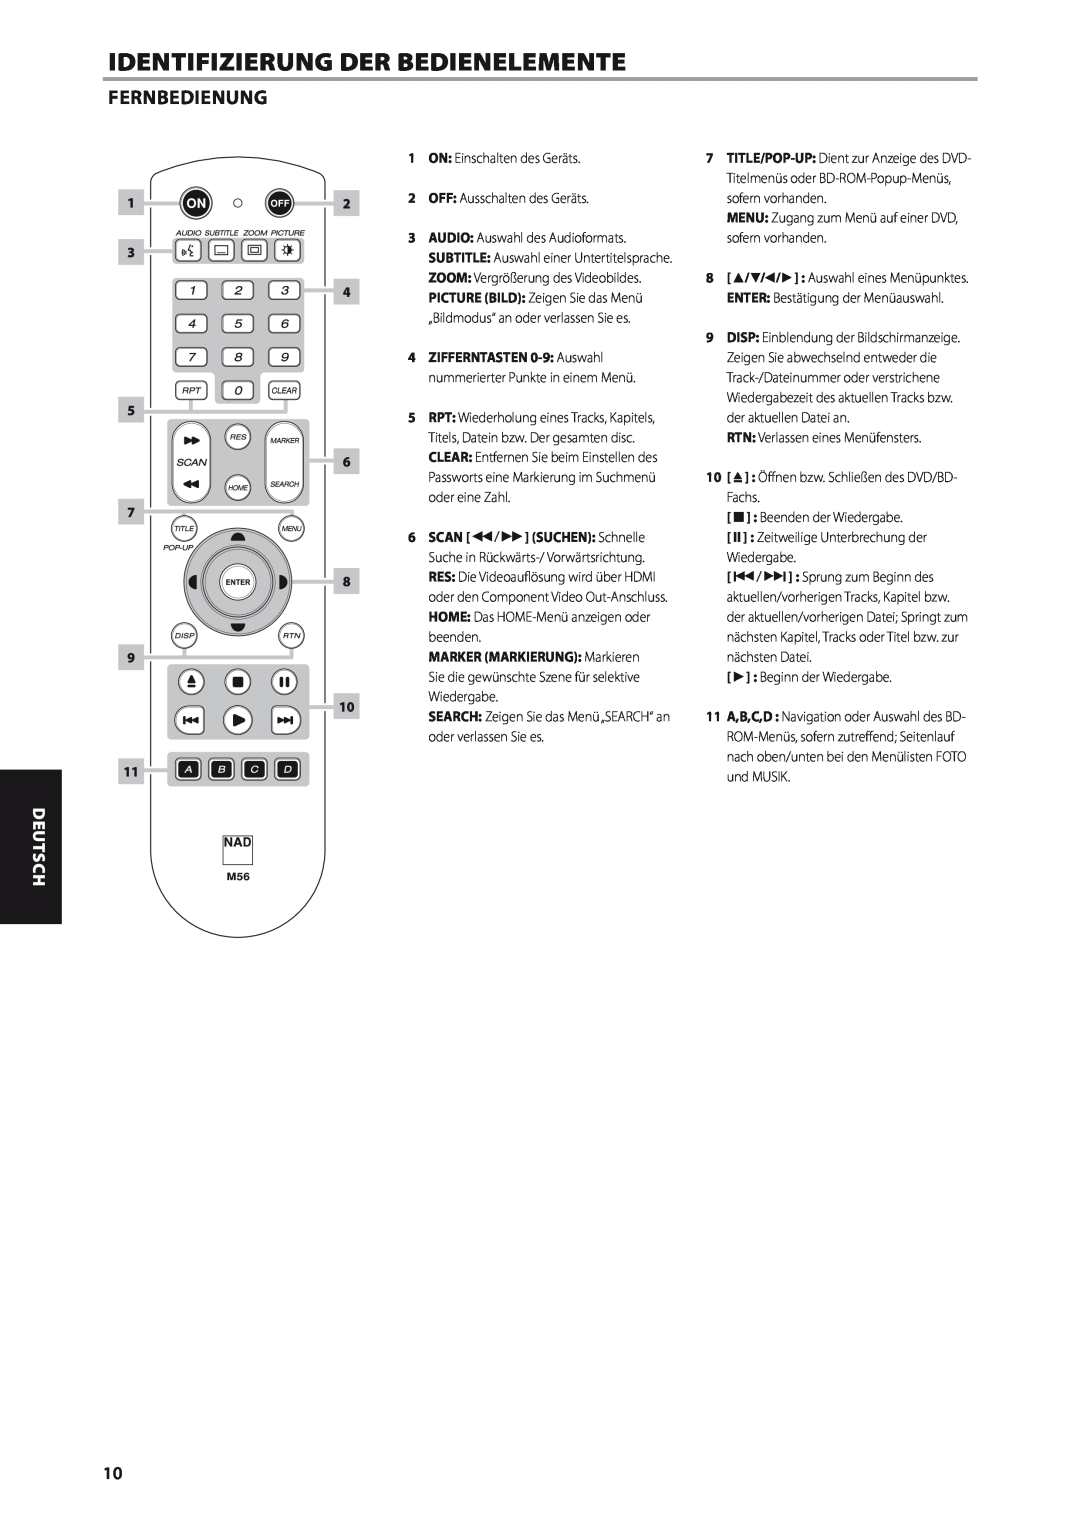 NAD M56 manual Fernbedienung, Identifizierung Der Bedienelemente, Deutsch 